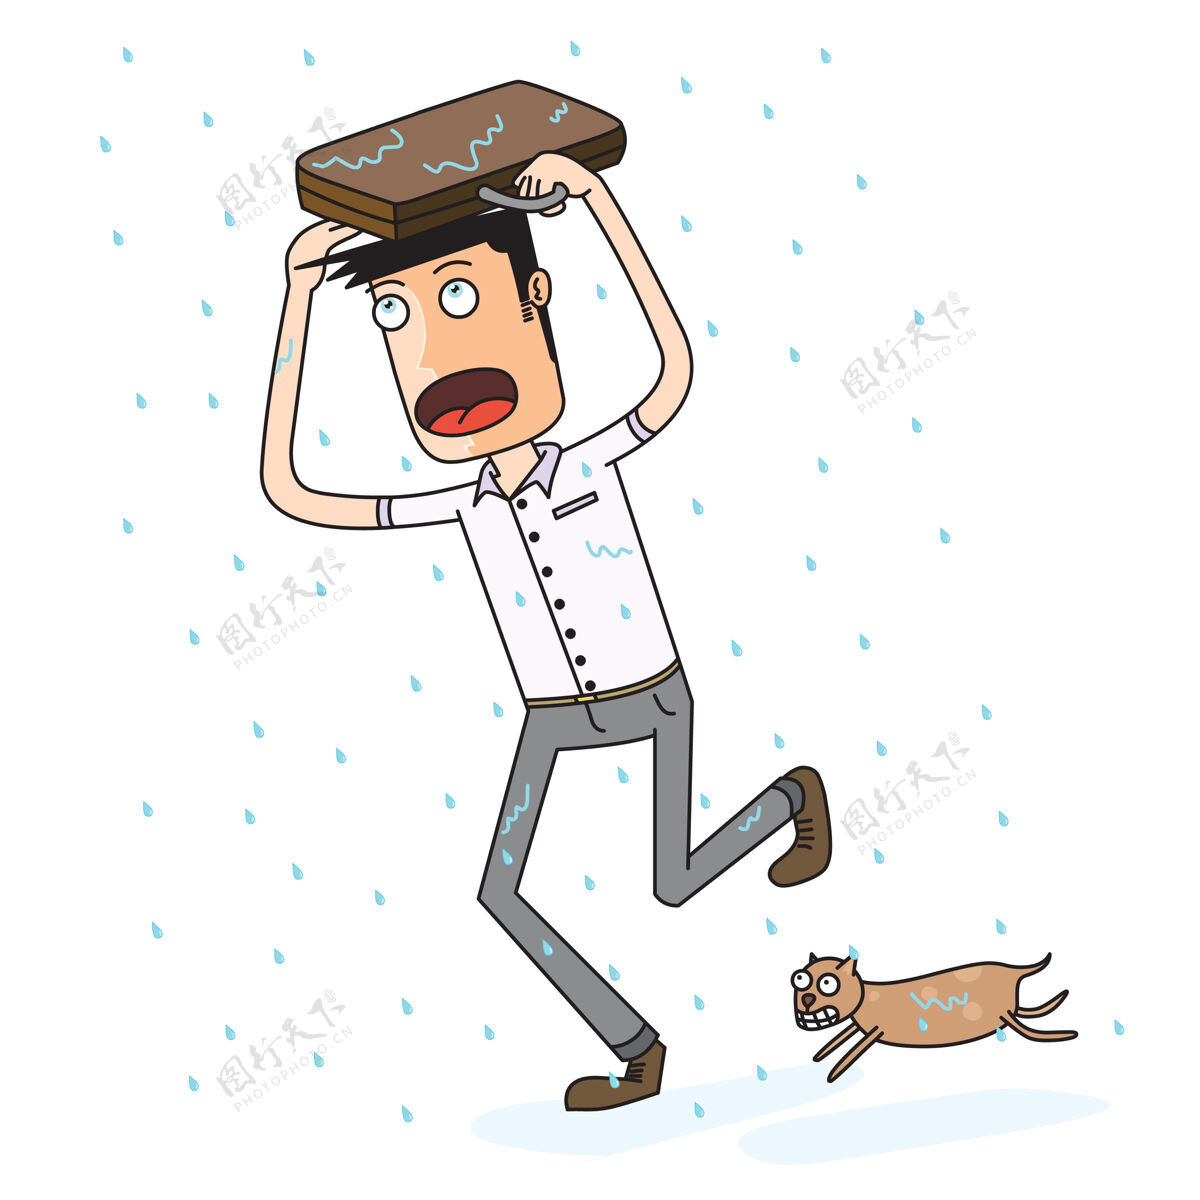 匆忙男人在回家的路上被雨淋湿了保护动物宠物